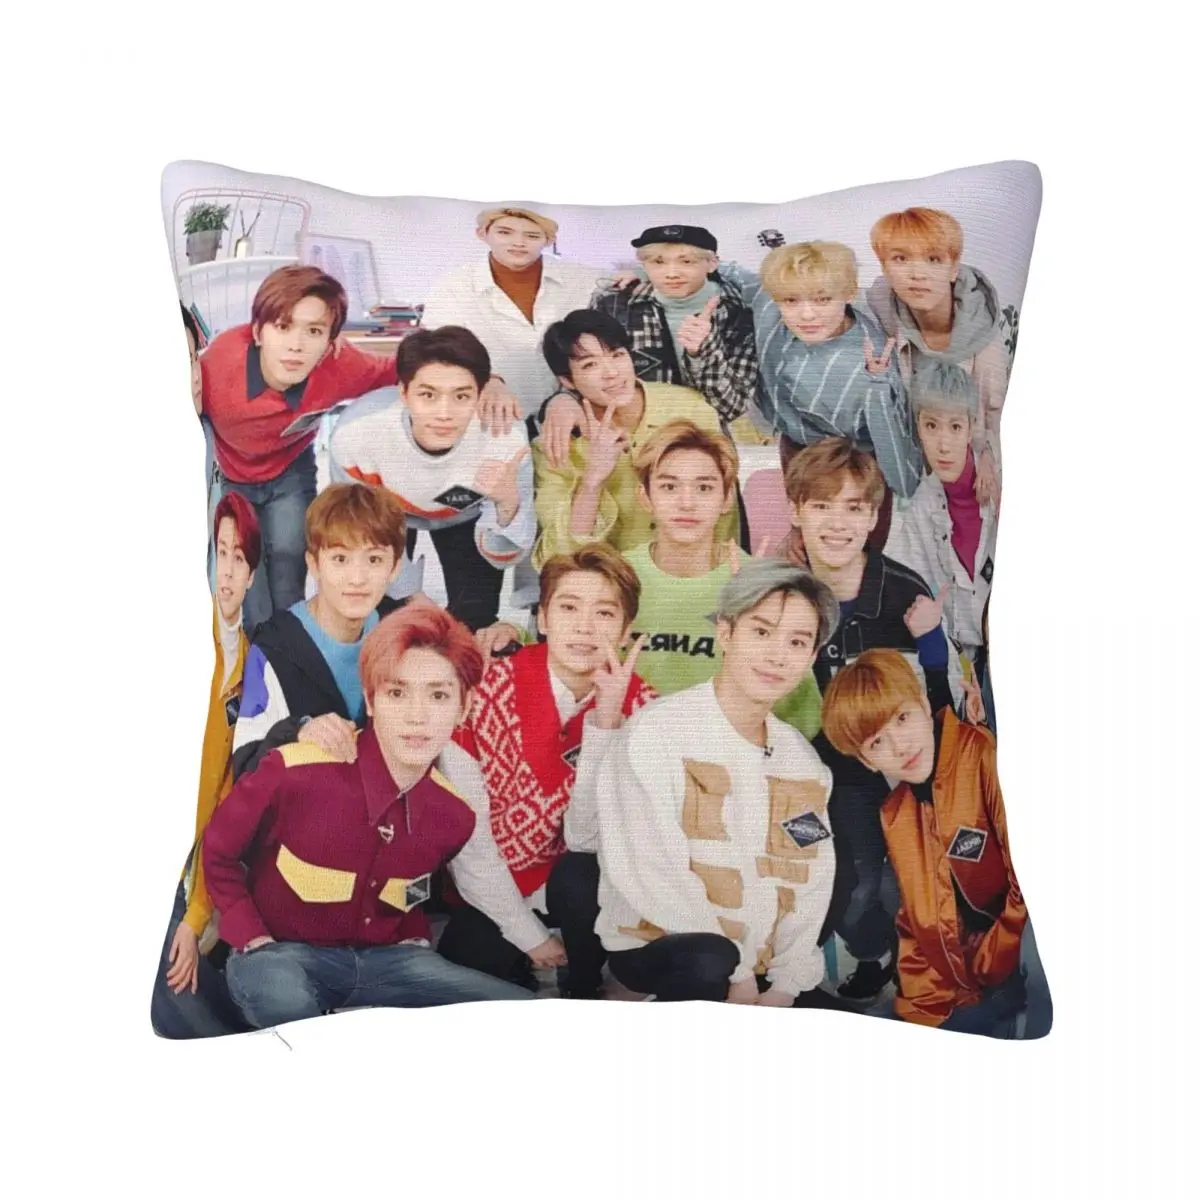 

NCT DREAM Plaid Pillowcase Printing Fabric Cushion Cover Decoration Korean Boy Group Pillow Case Cover Home Zipper 40X40cm